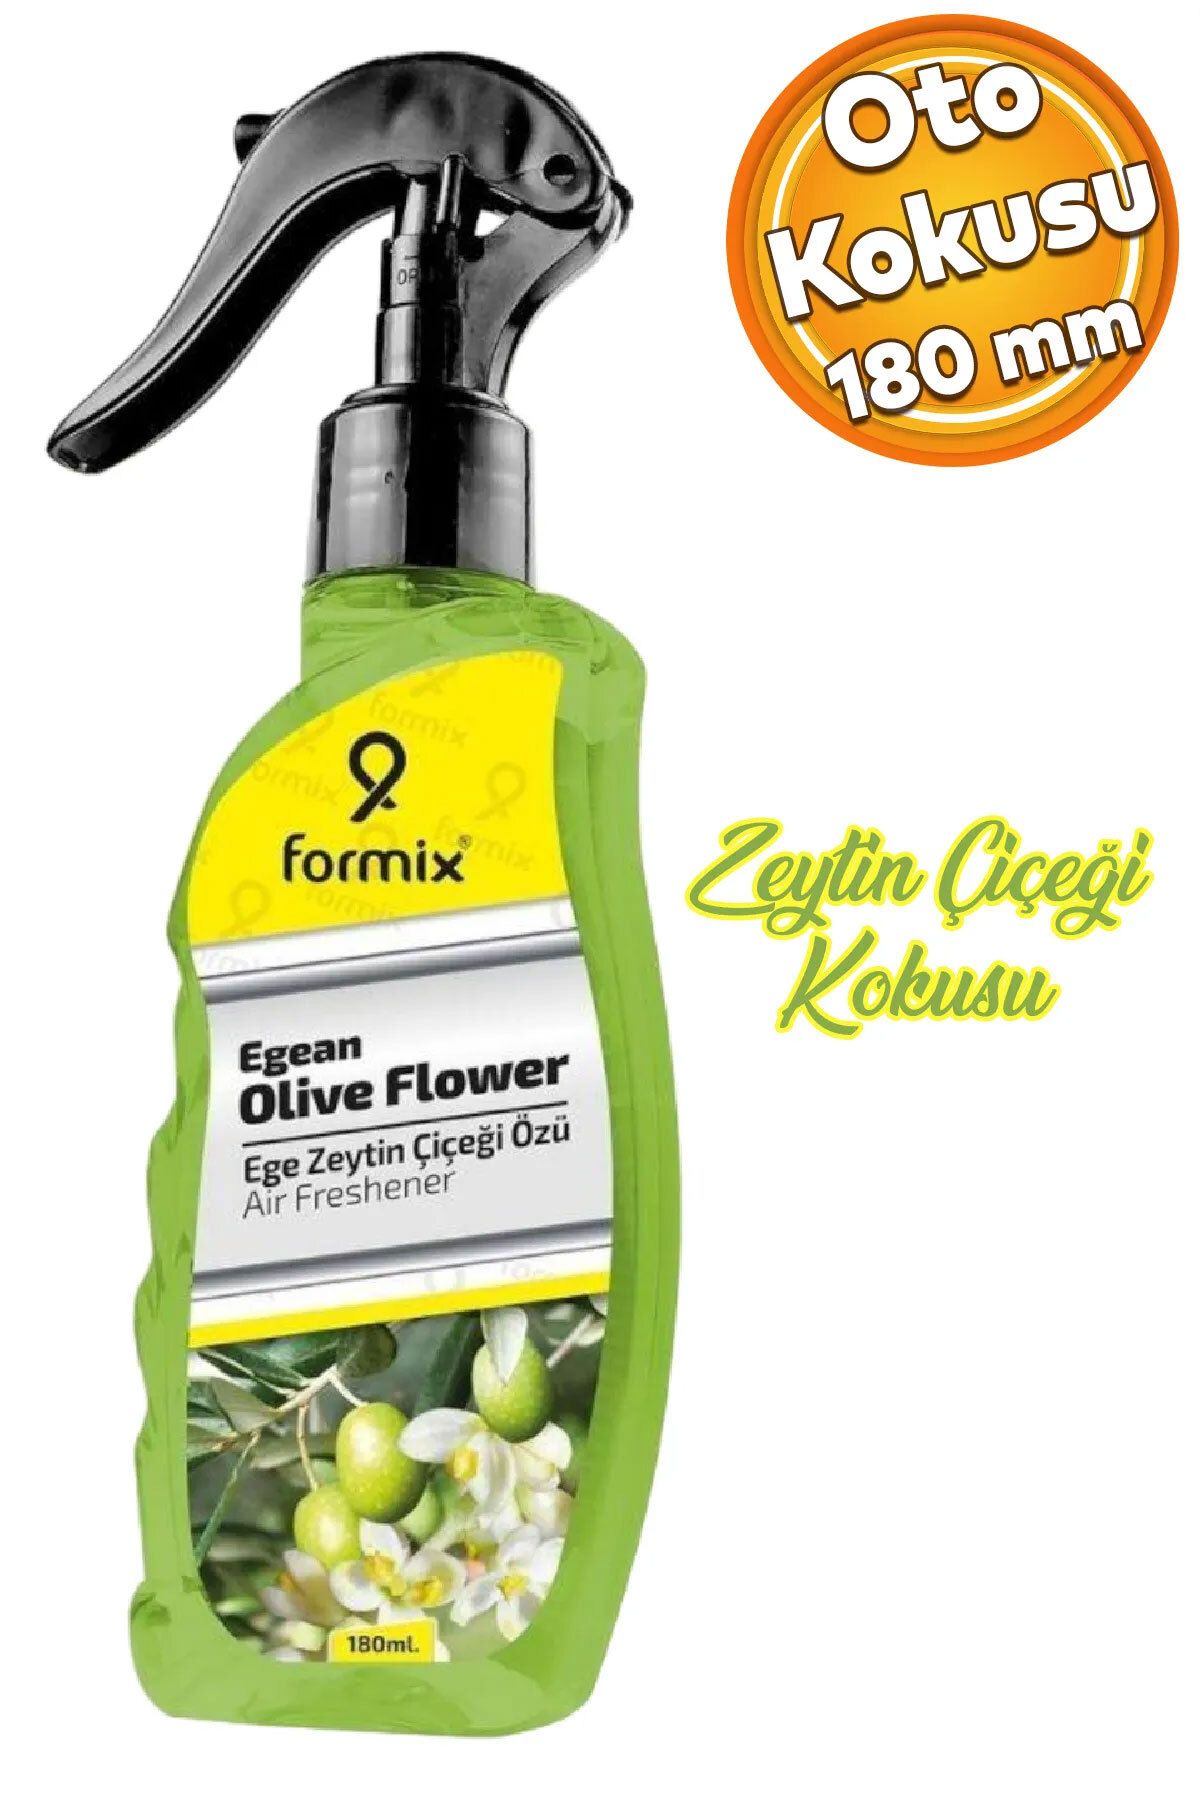 Automix Formix Araba Araç Otomobil Oto Ev Oda Ofis Otel Koku Parfüm Sprey Ege Zeytin Çiçeği Kokusu 180 ML